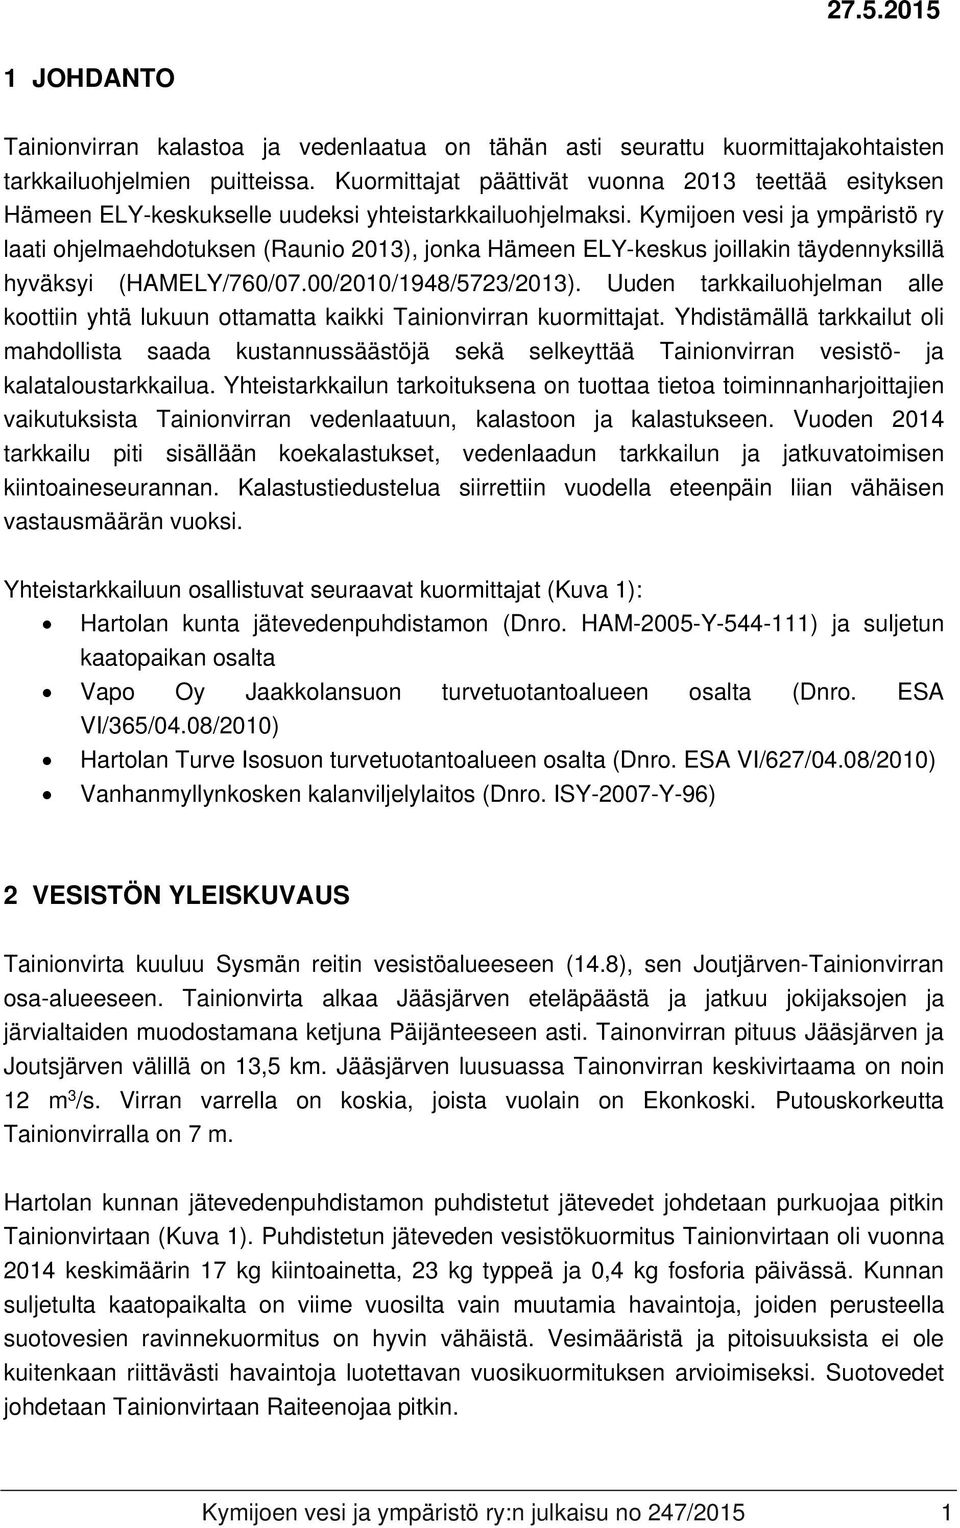 Kymijoen vesi ja ympäristö ry laati ohjelmaehdotuksen (Raunio 2013), jonka Hämeen ELY-keskus joillakin täydennyksillä hyväksyi (HAMELY/760/07.00/2010/1948/5723/2013).